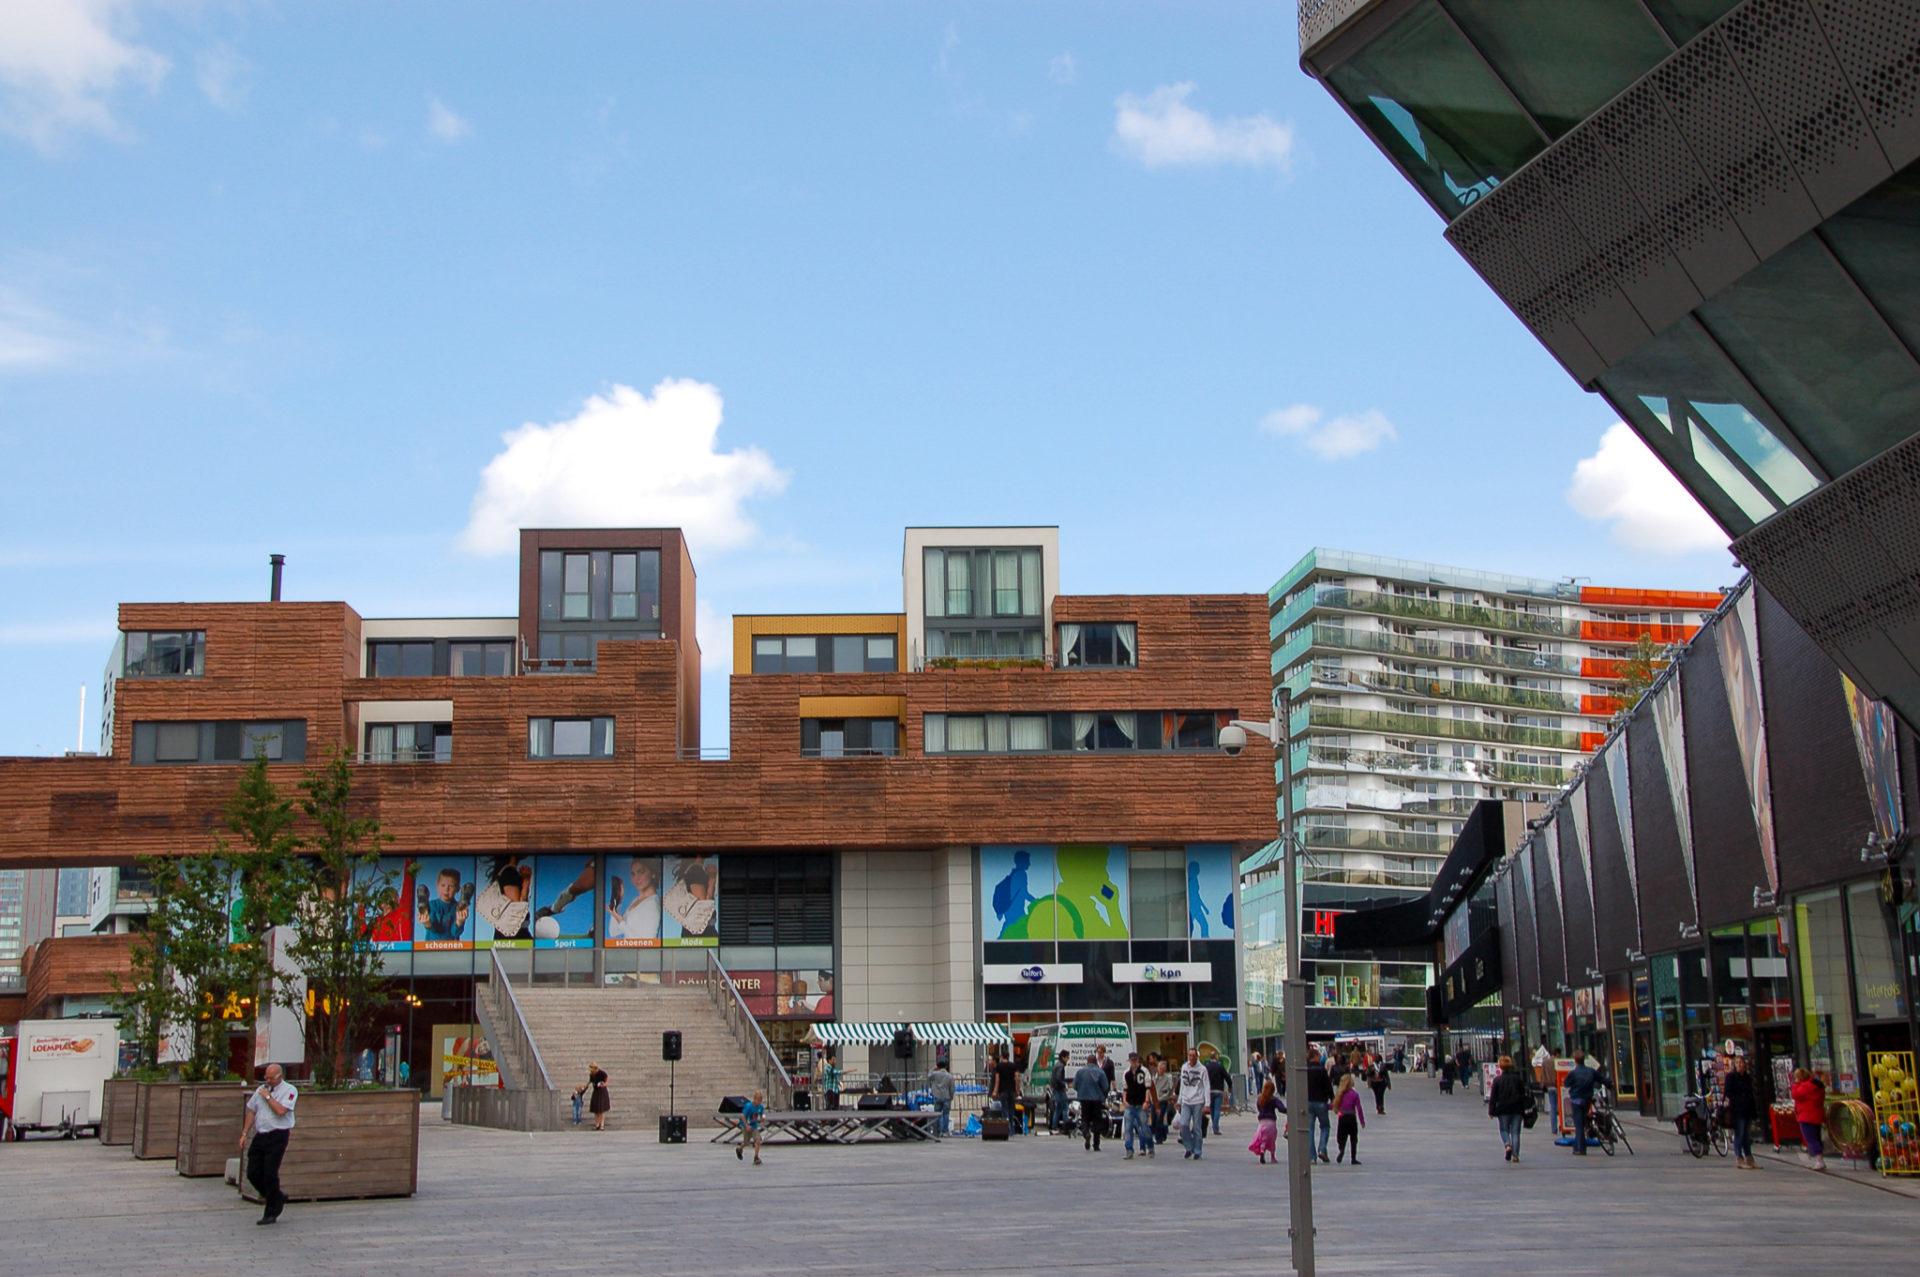 Büroturm De Smaragd als Ausdruck moderner niederländischer Architektur